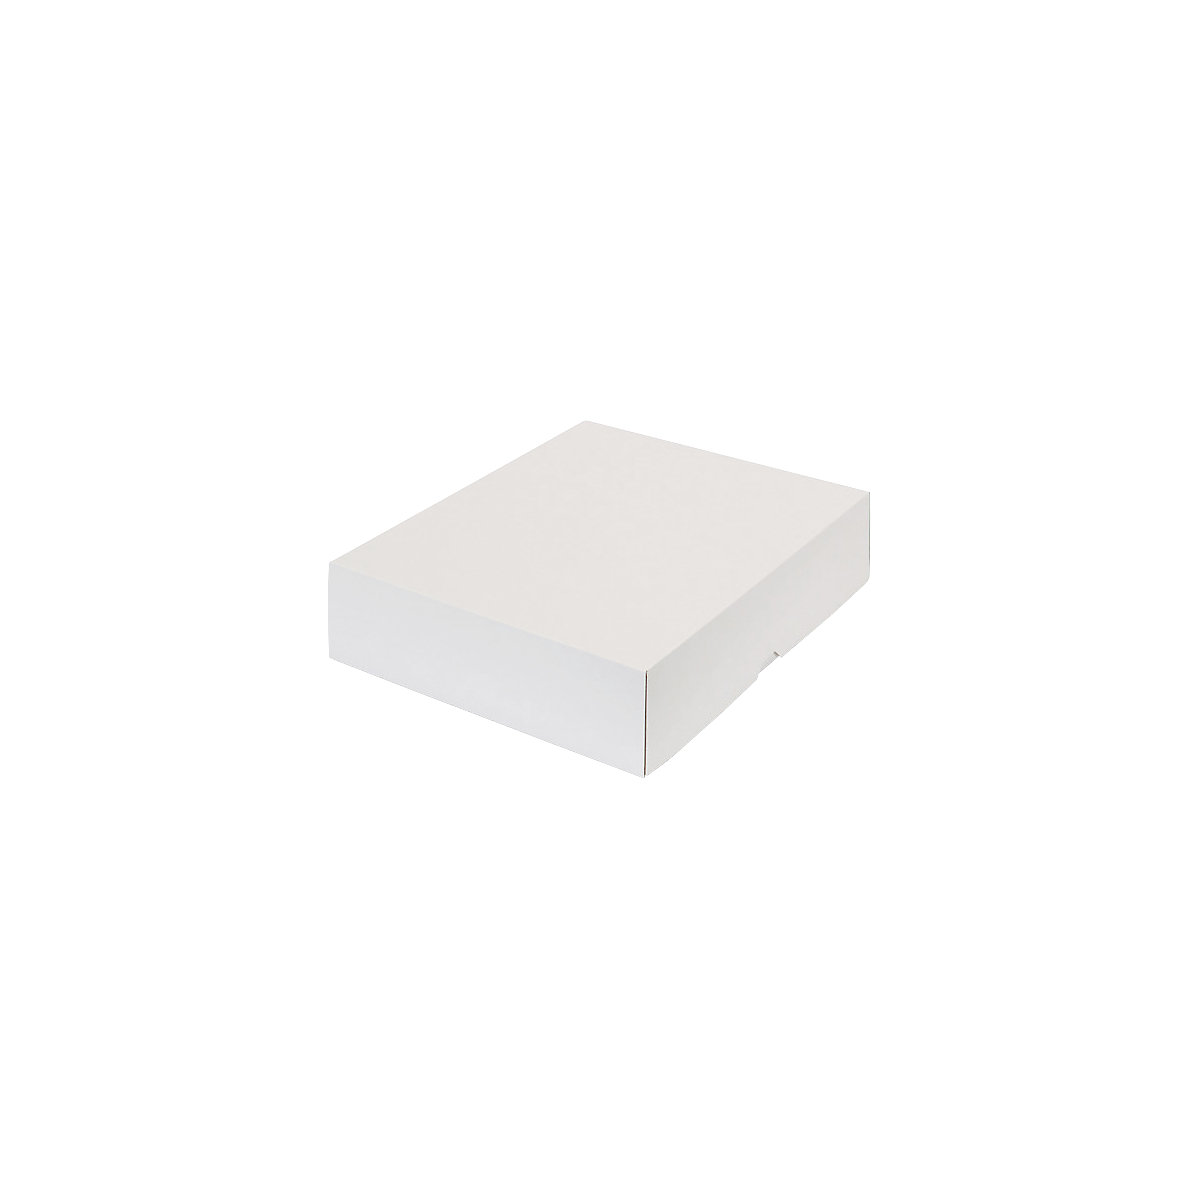 Stülpdeckelkarton, zweiteilig, Innenmaße 355 x 275 x 80 mm, B4, weiß, ab 120 Stk-29